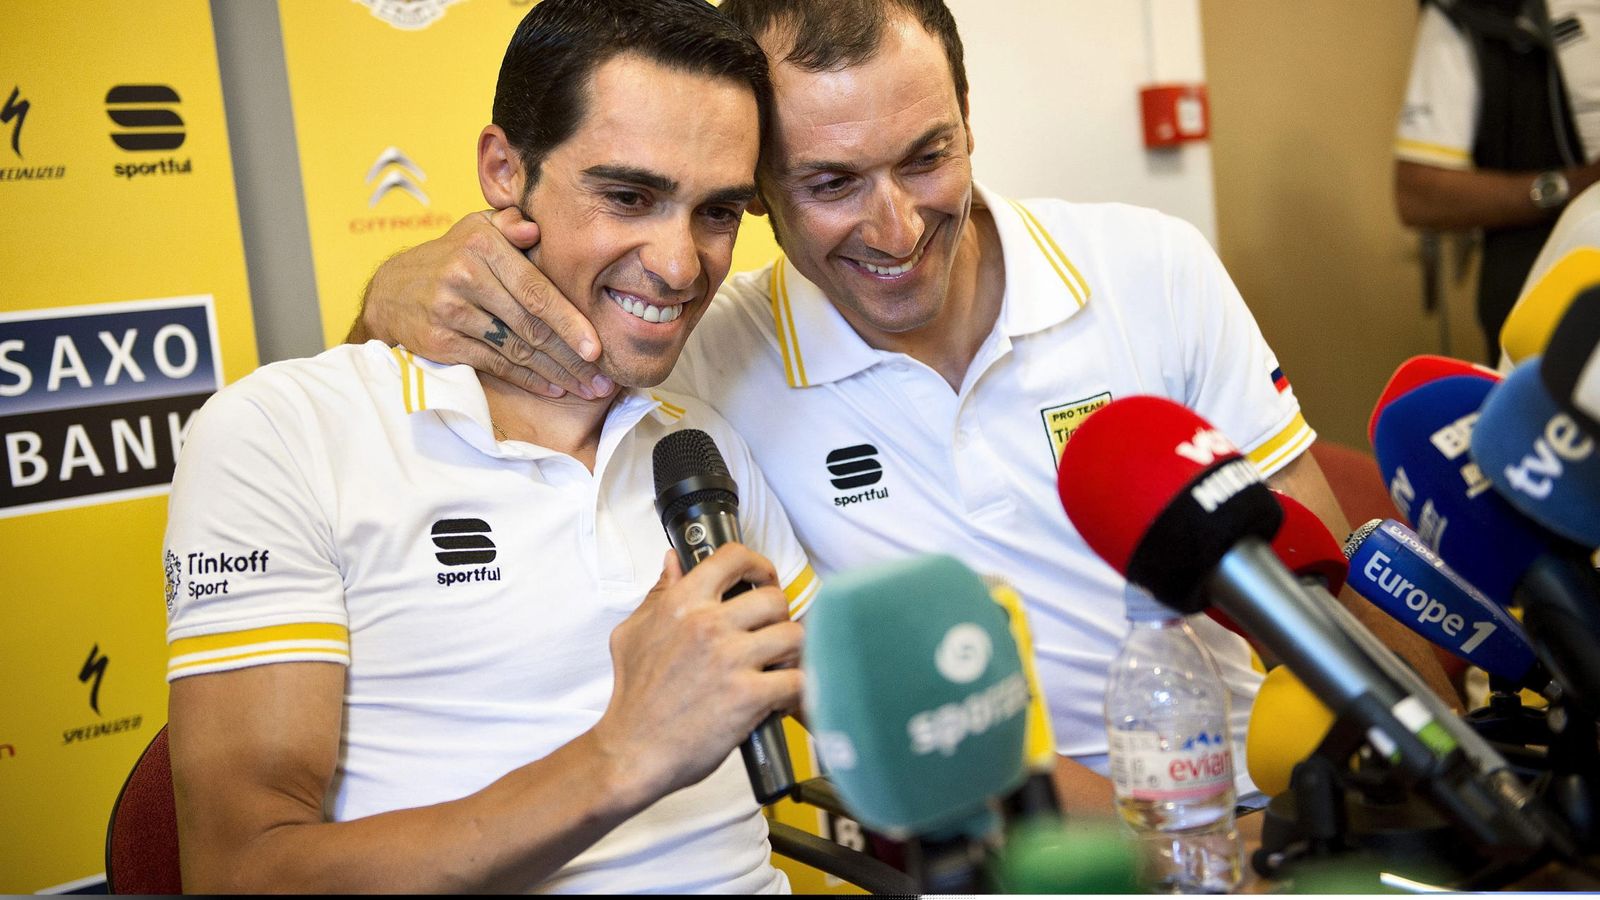 Foto: Basso comunicó su dolencia en una rueda de prensa en la que estuvo acompañado de Contador (Efe)